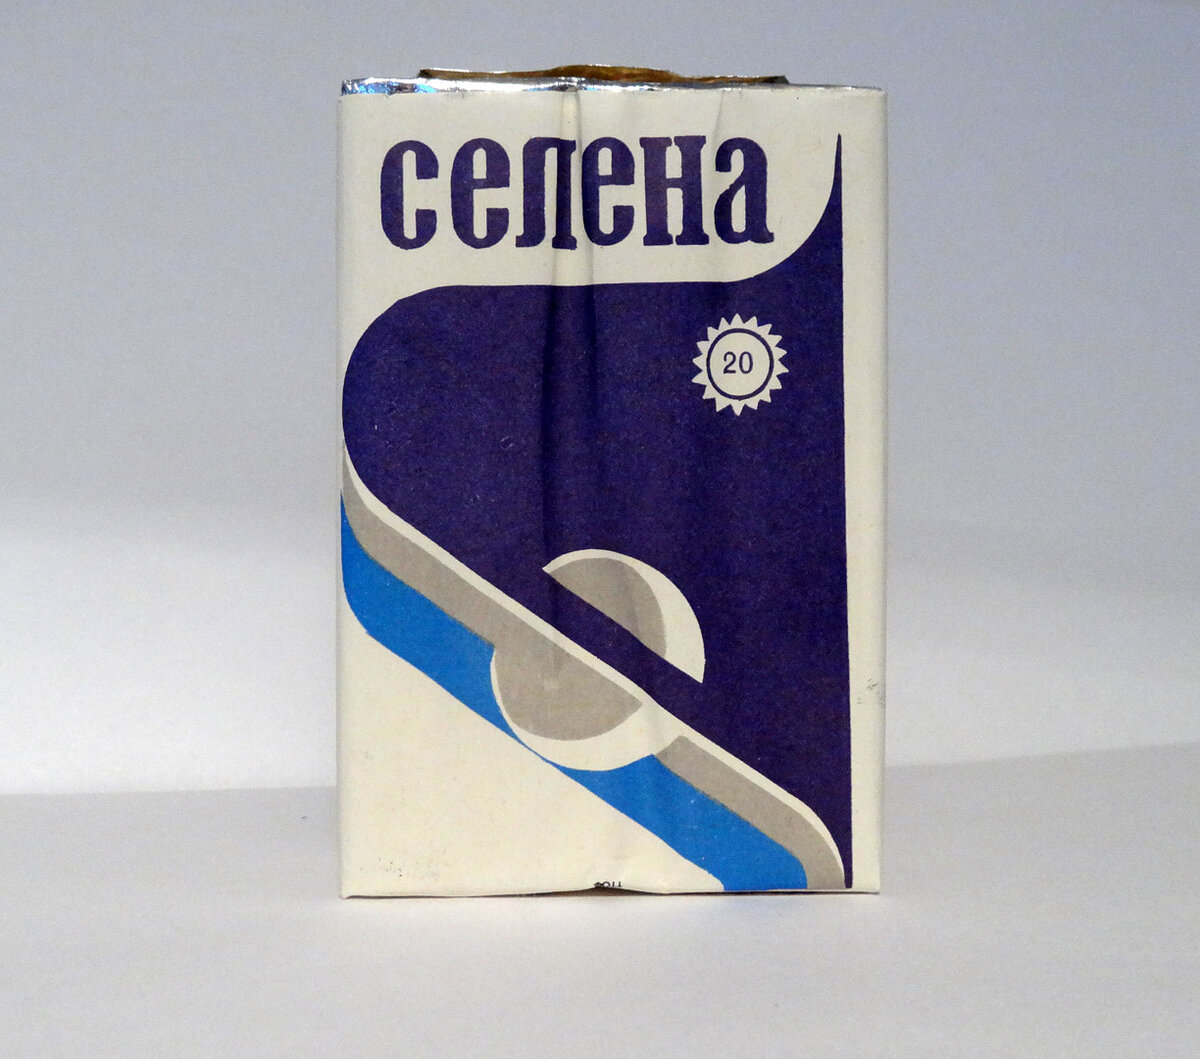 Сигареты СССР